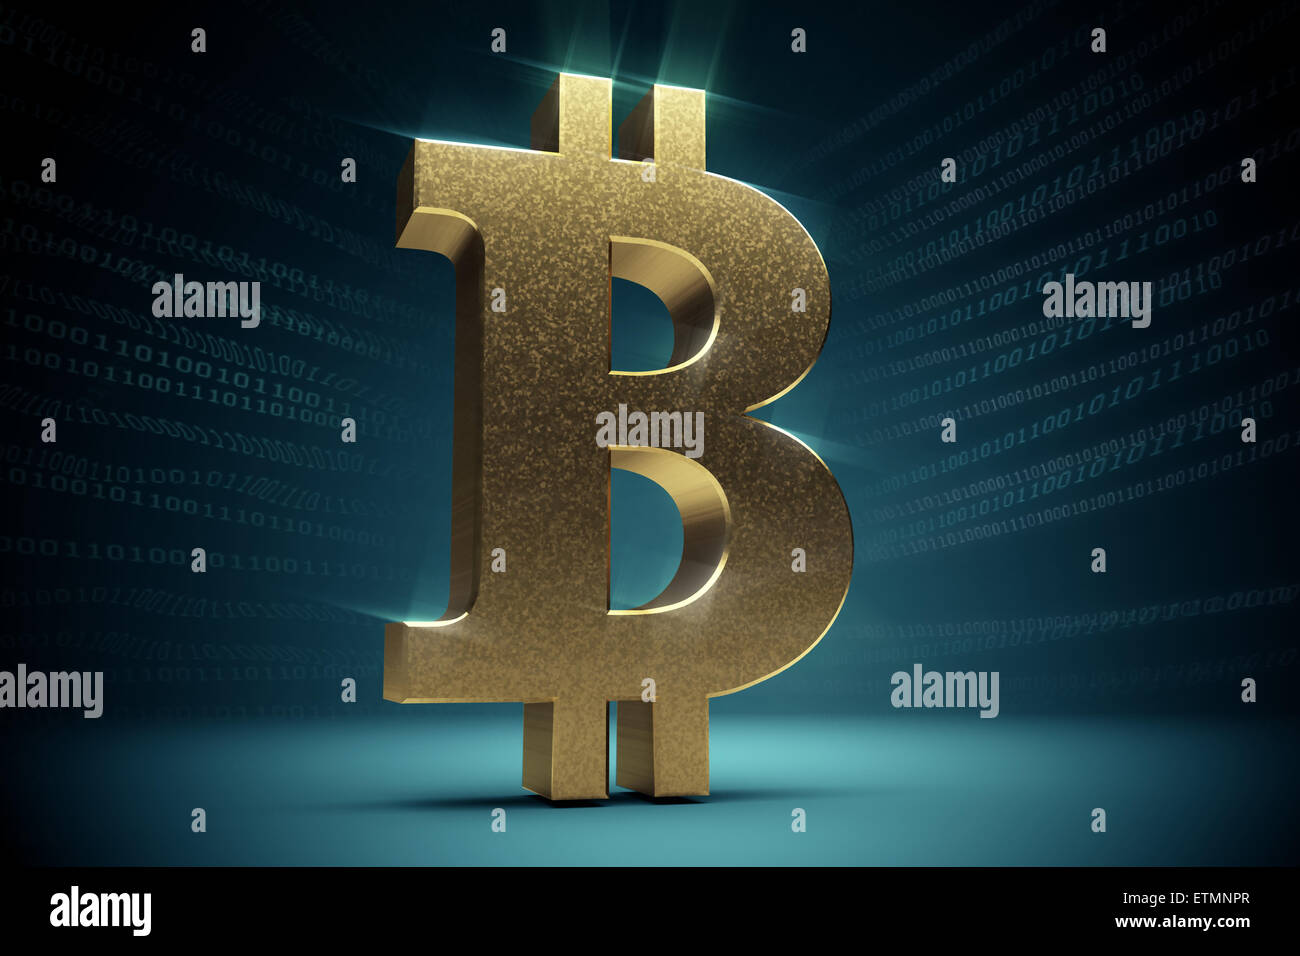 Une représentation stylisée d'un Bitcoin, la monnaie numérique. Banque D'Images